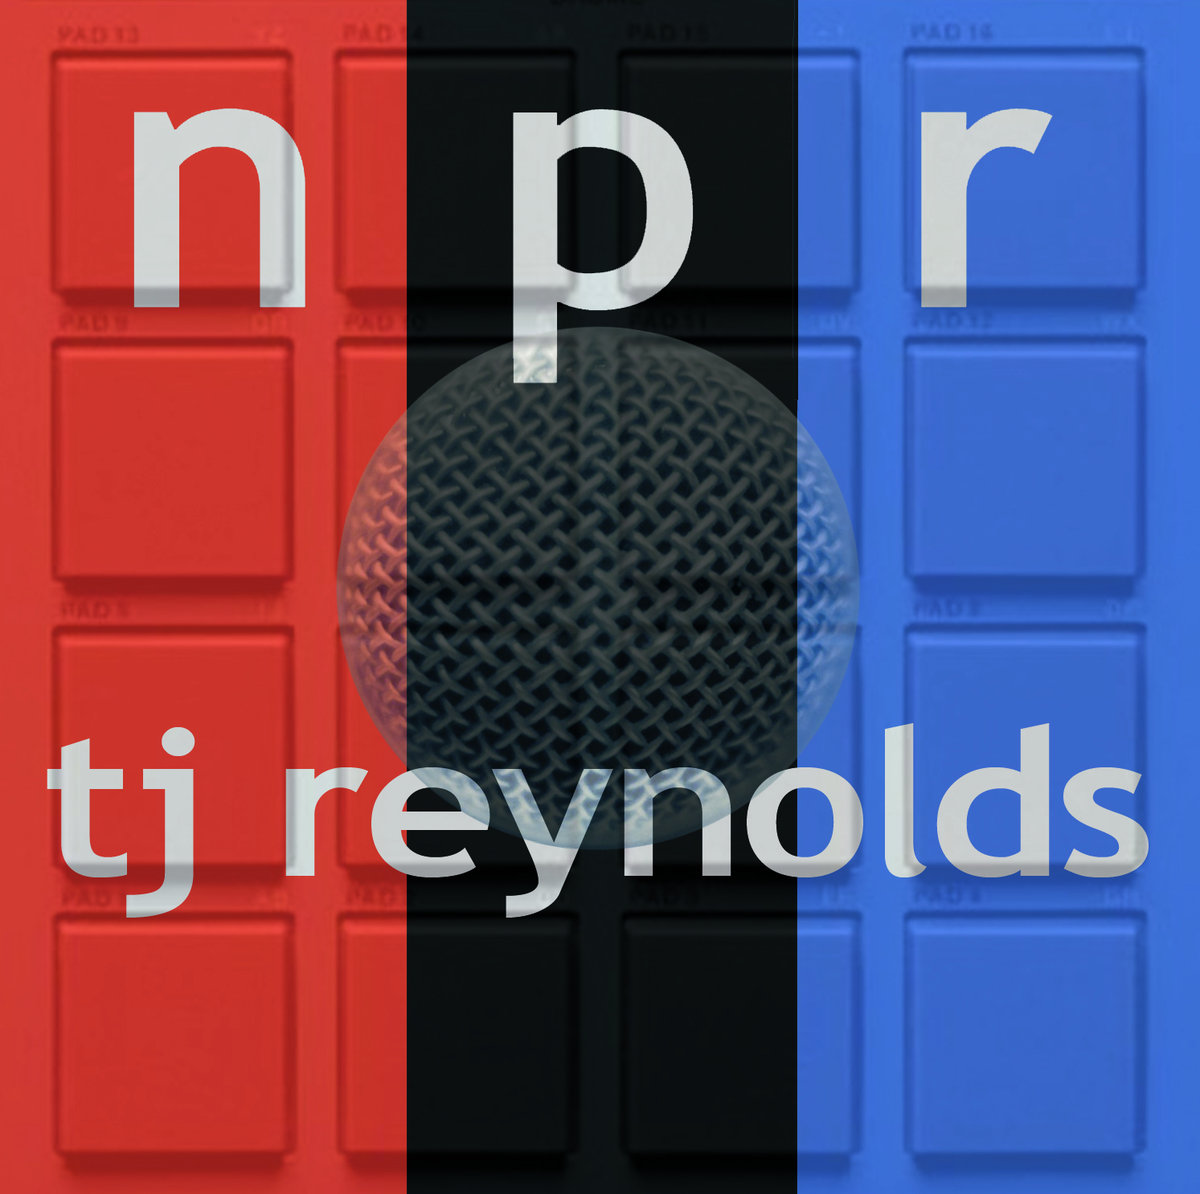 TJ Reynolds - "NPR" (Release) | @Zenolds